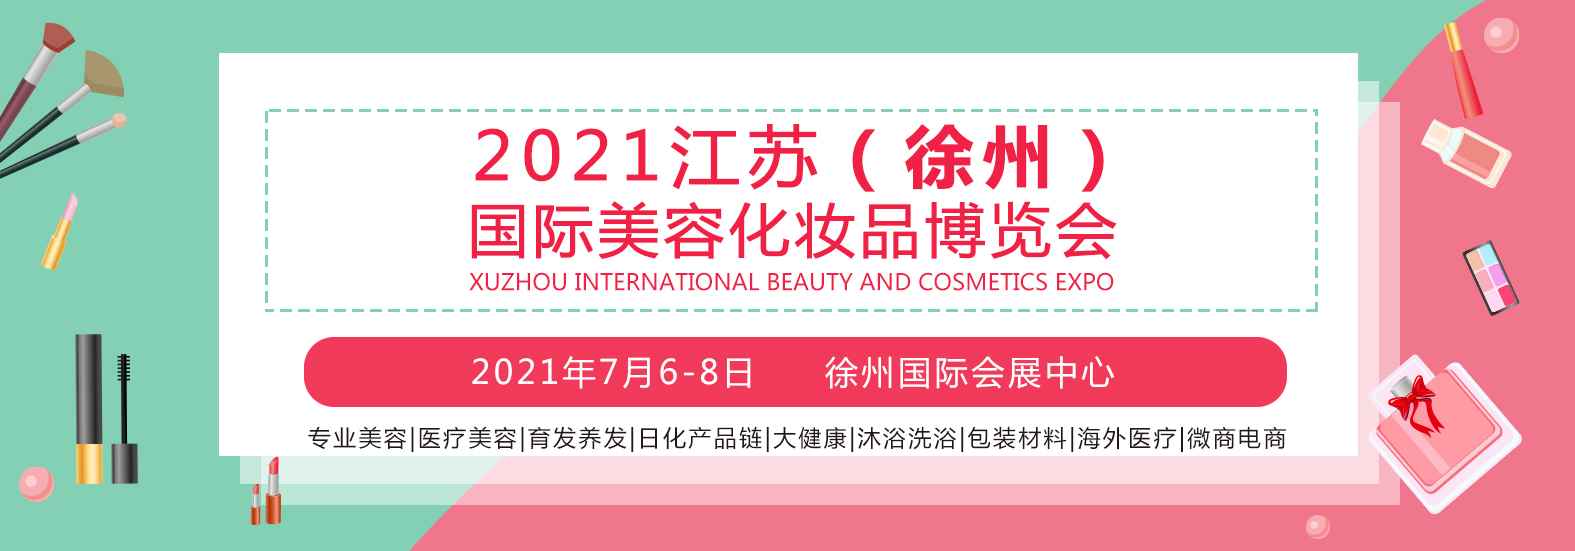 2021江苏（徐州）国际美容化妆品博览会